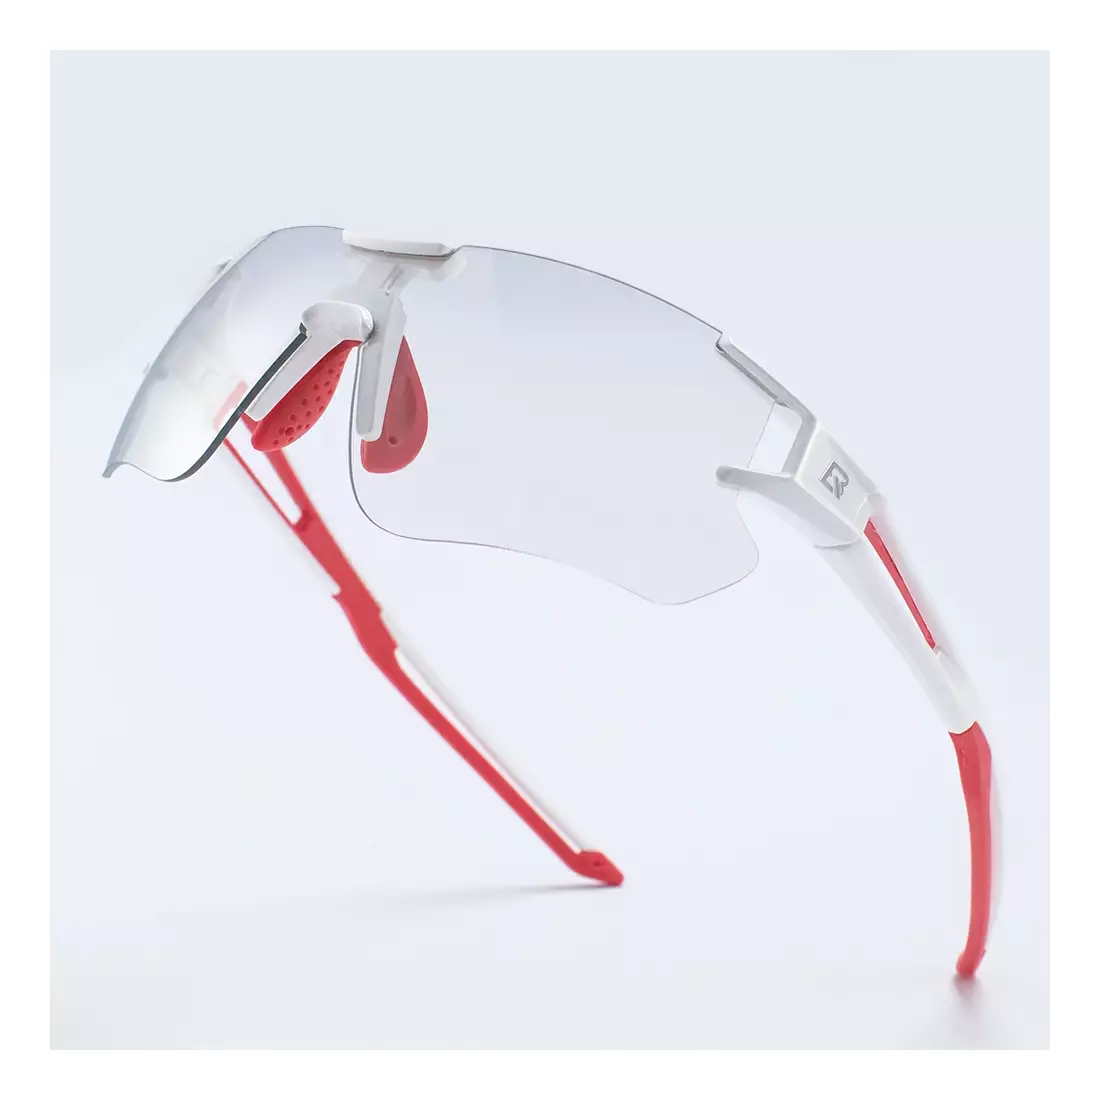 Rockbros 10126 kerékpár / sport szemüveg fotokróm fehér-piros színnel